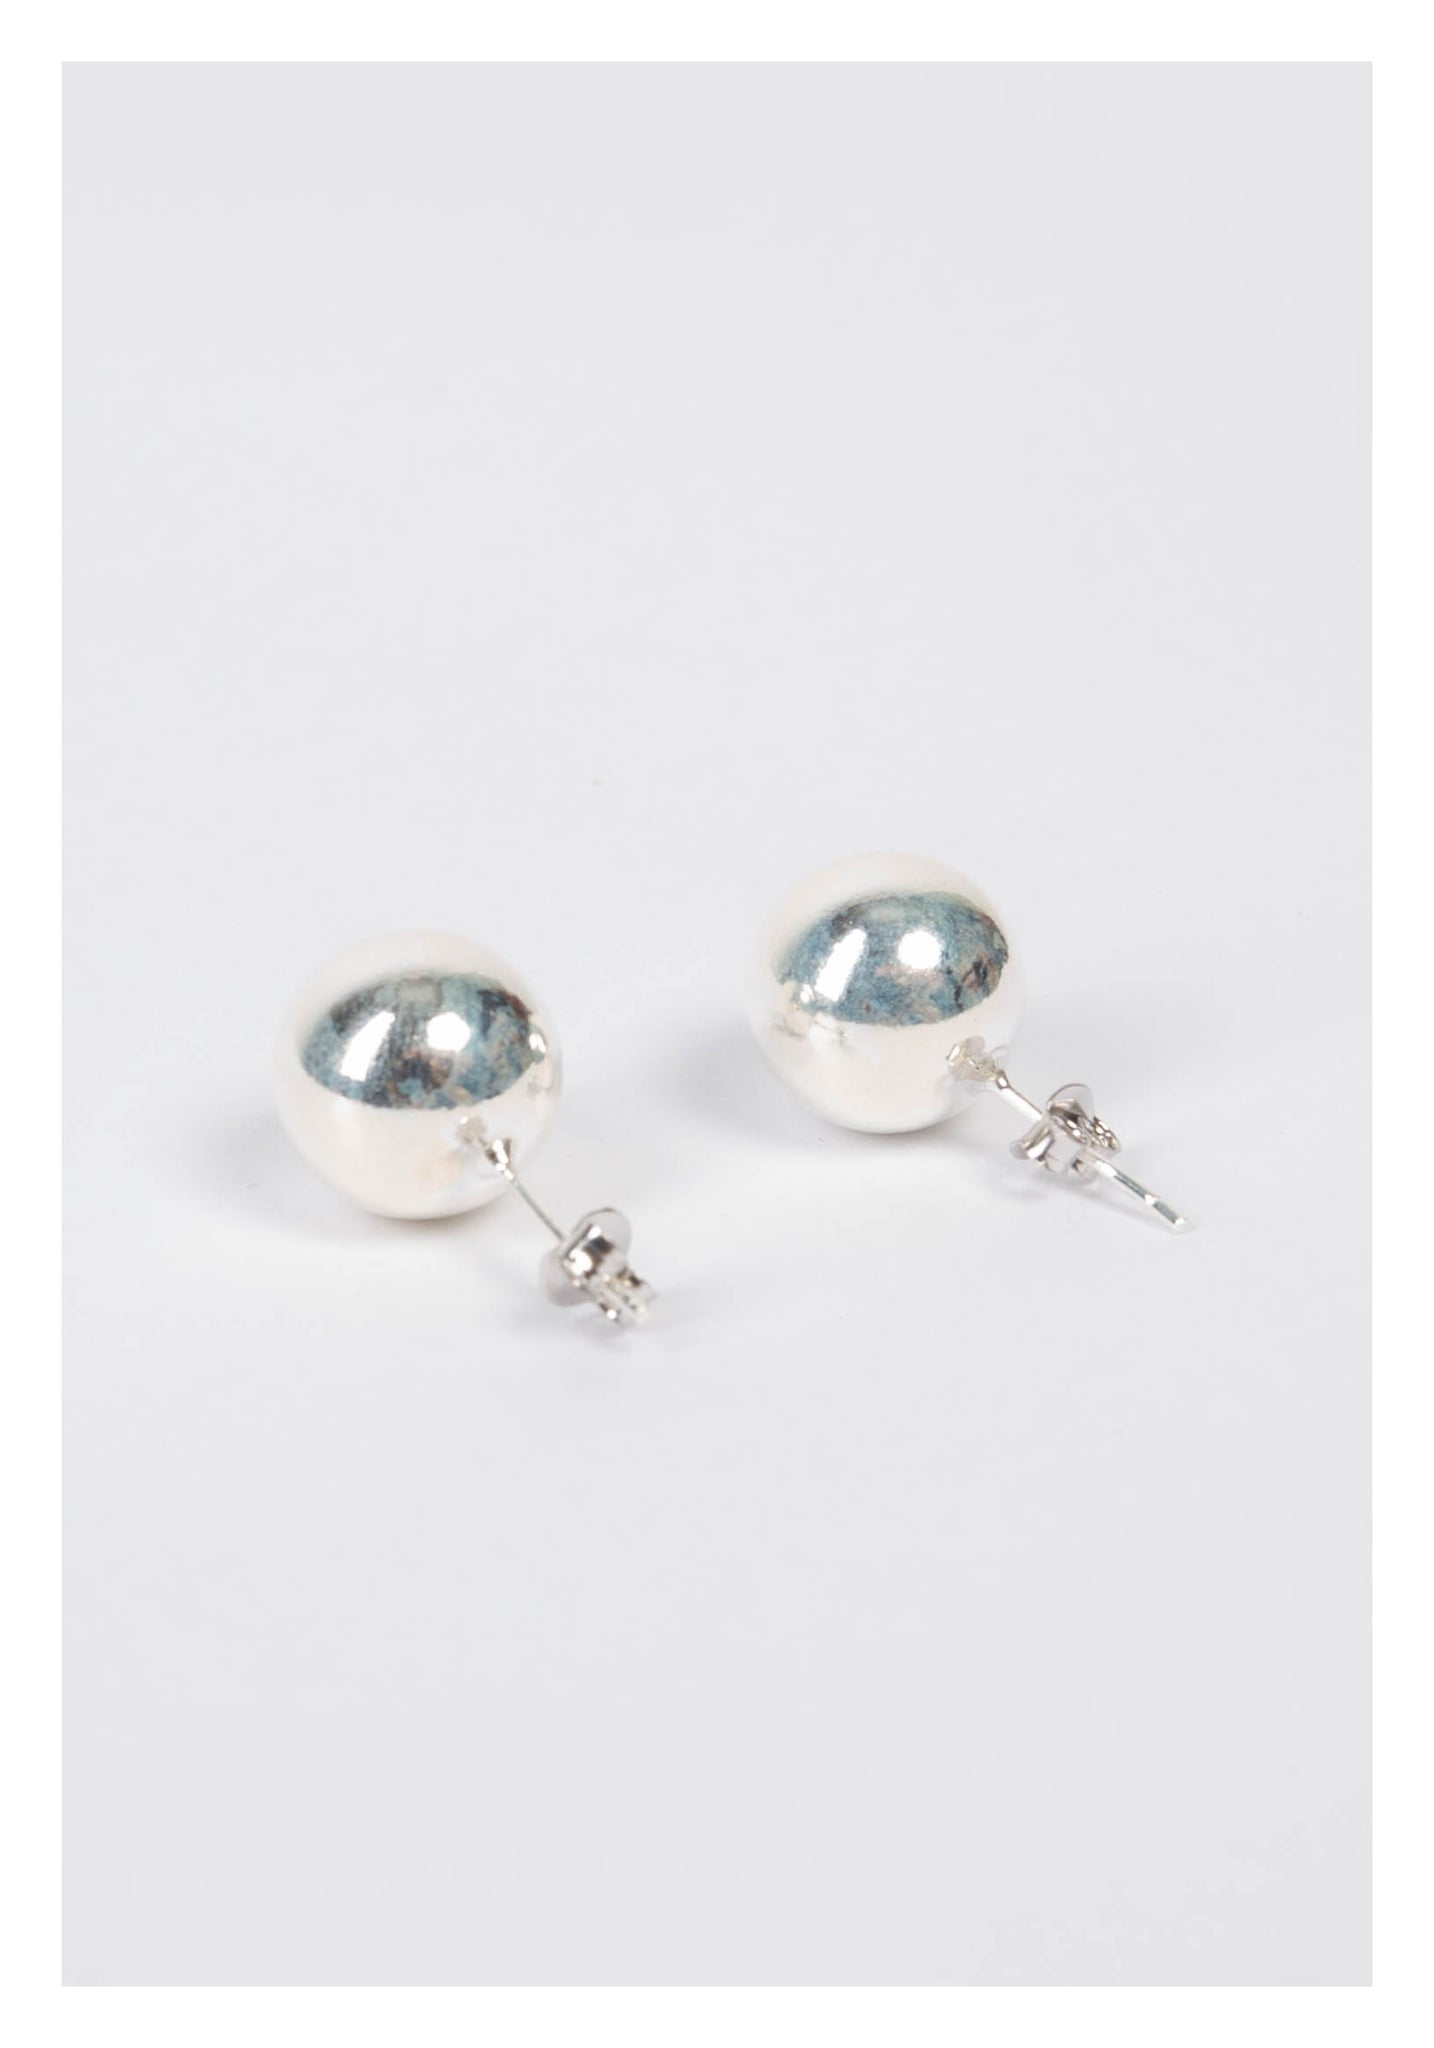 925 Silver 12mm Ball Earrings